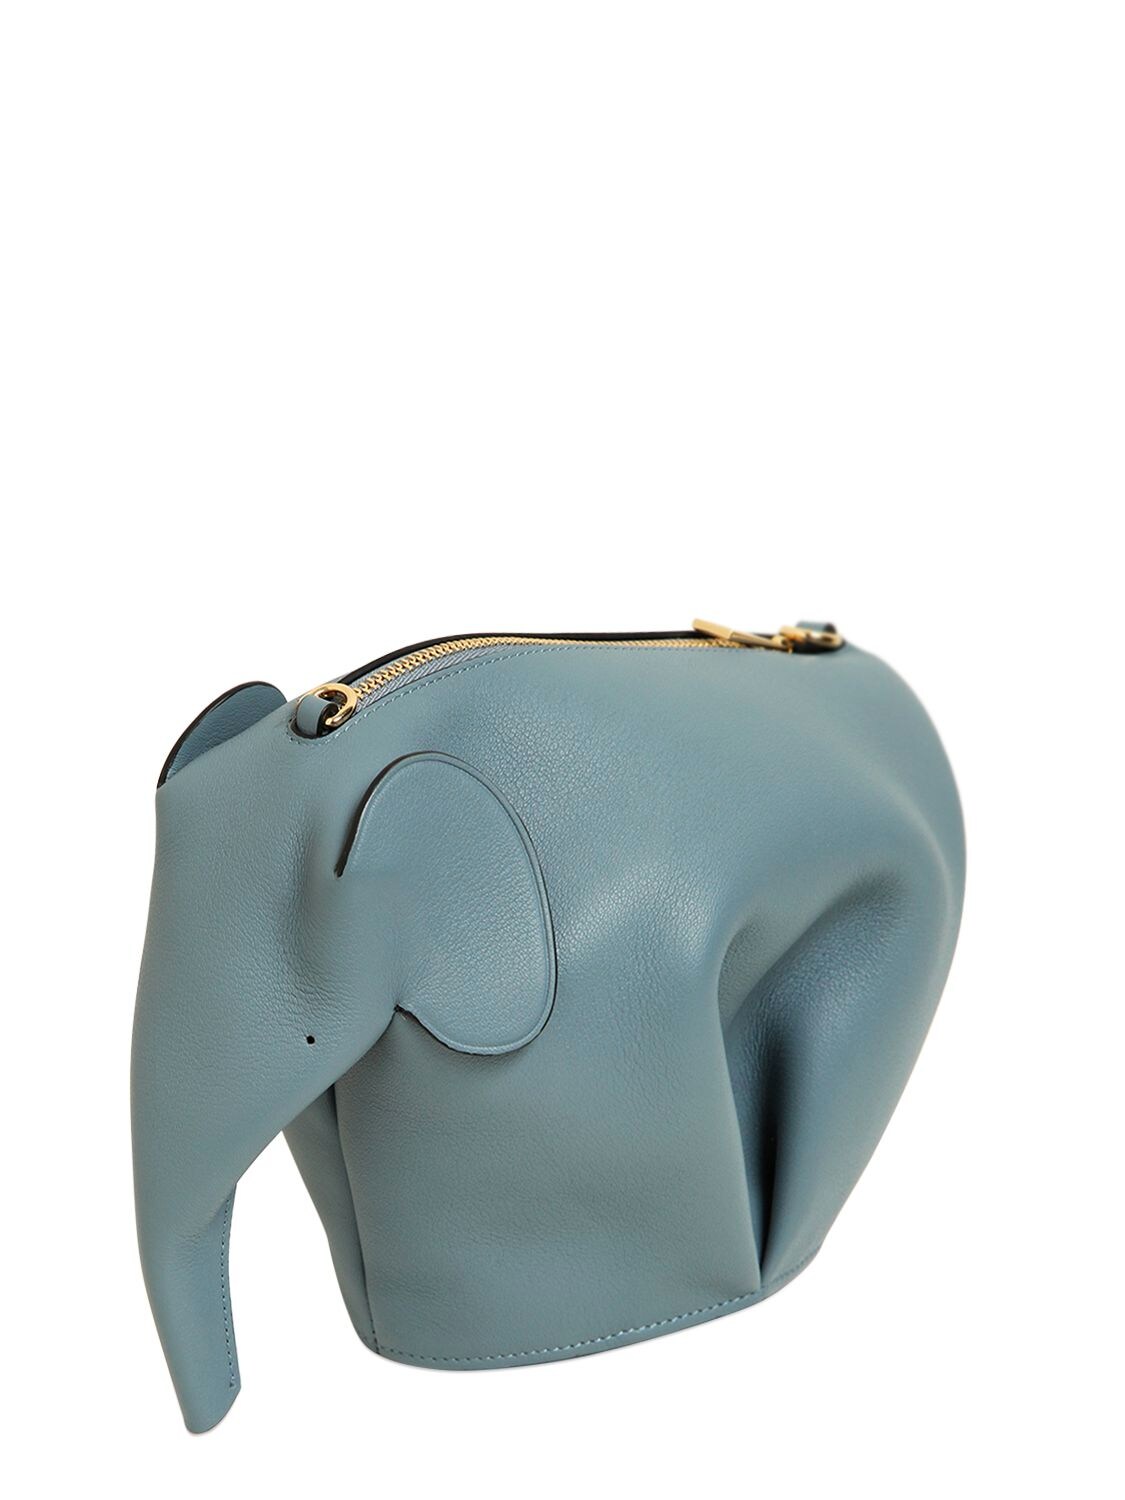 ELEPHANT LEATHER SHOULDER BAG